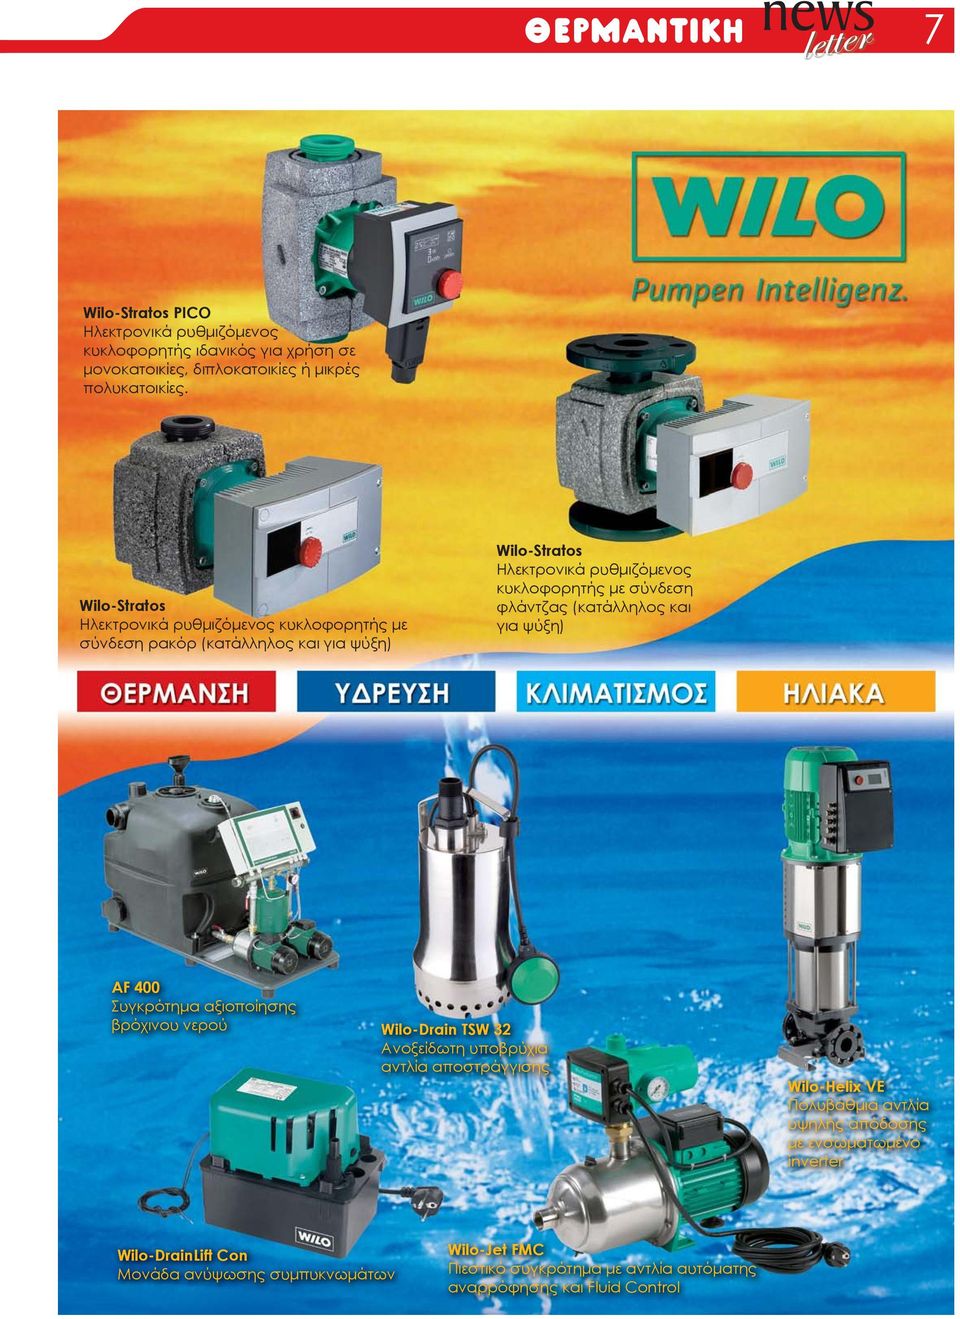 φλάντζας (κατάλληλος και για ψύξη) AF 400 Συγκρότημα αξιοποίησης βρόχινου νερού Wilo-Drain TSW 32 Ανοξείδωτη υποβρύχια αντλία αποστράγγισης Wilo-Helix VE